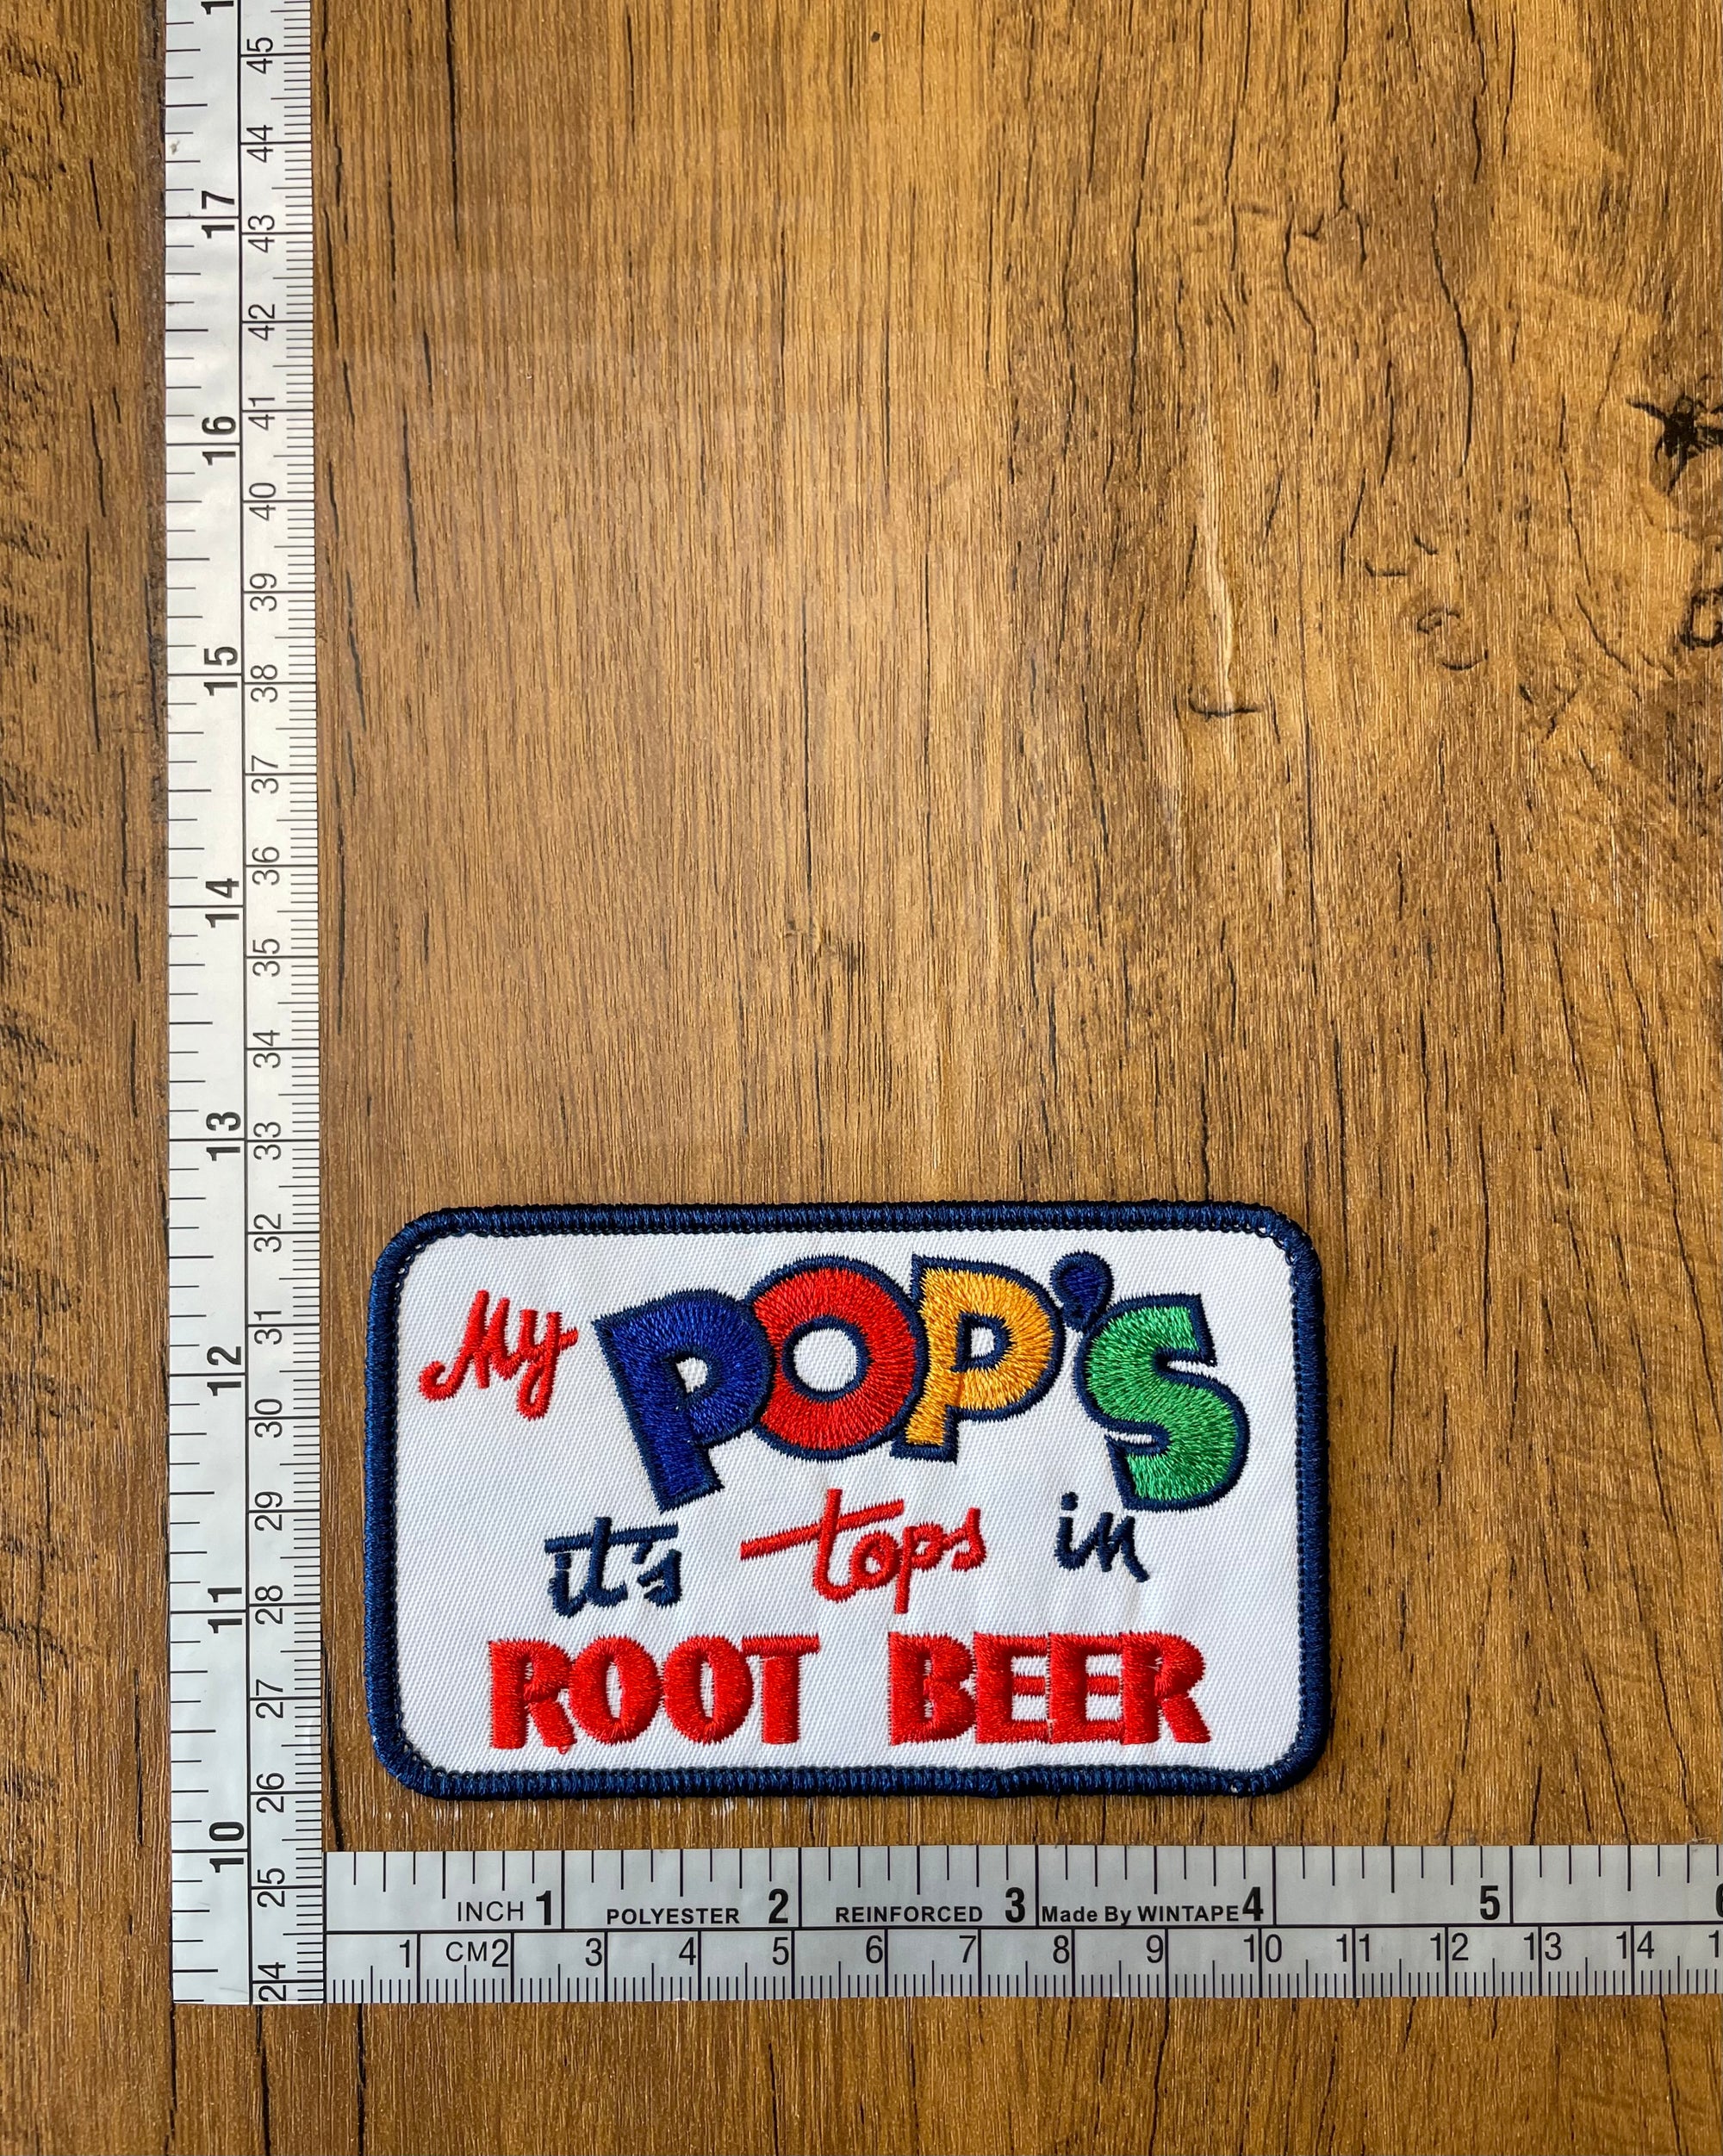 My Pop’s it’s Tops in Root Beer